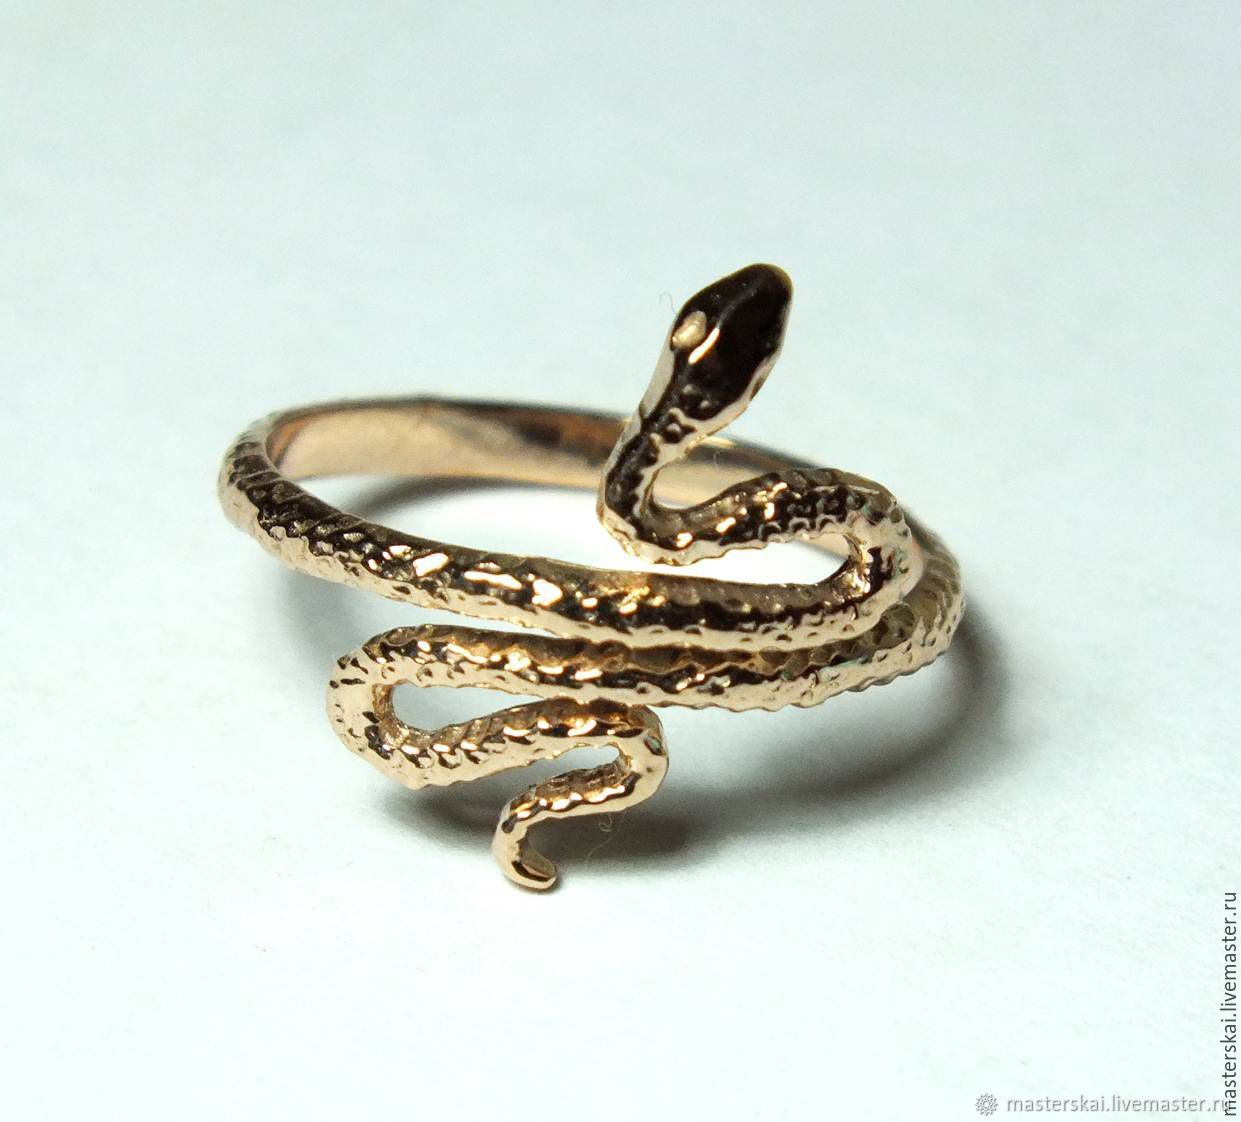 Цены змейки. Золотое кольцо змейка 585. Кольцо змейка, золото 585. Кольцо змейка 585. Золотое кольцо змейка Санлайт.